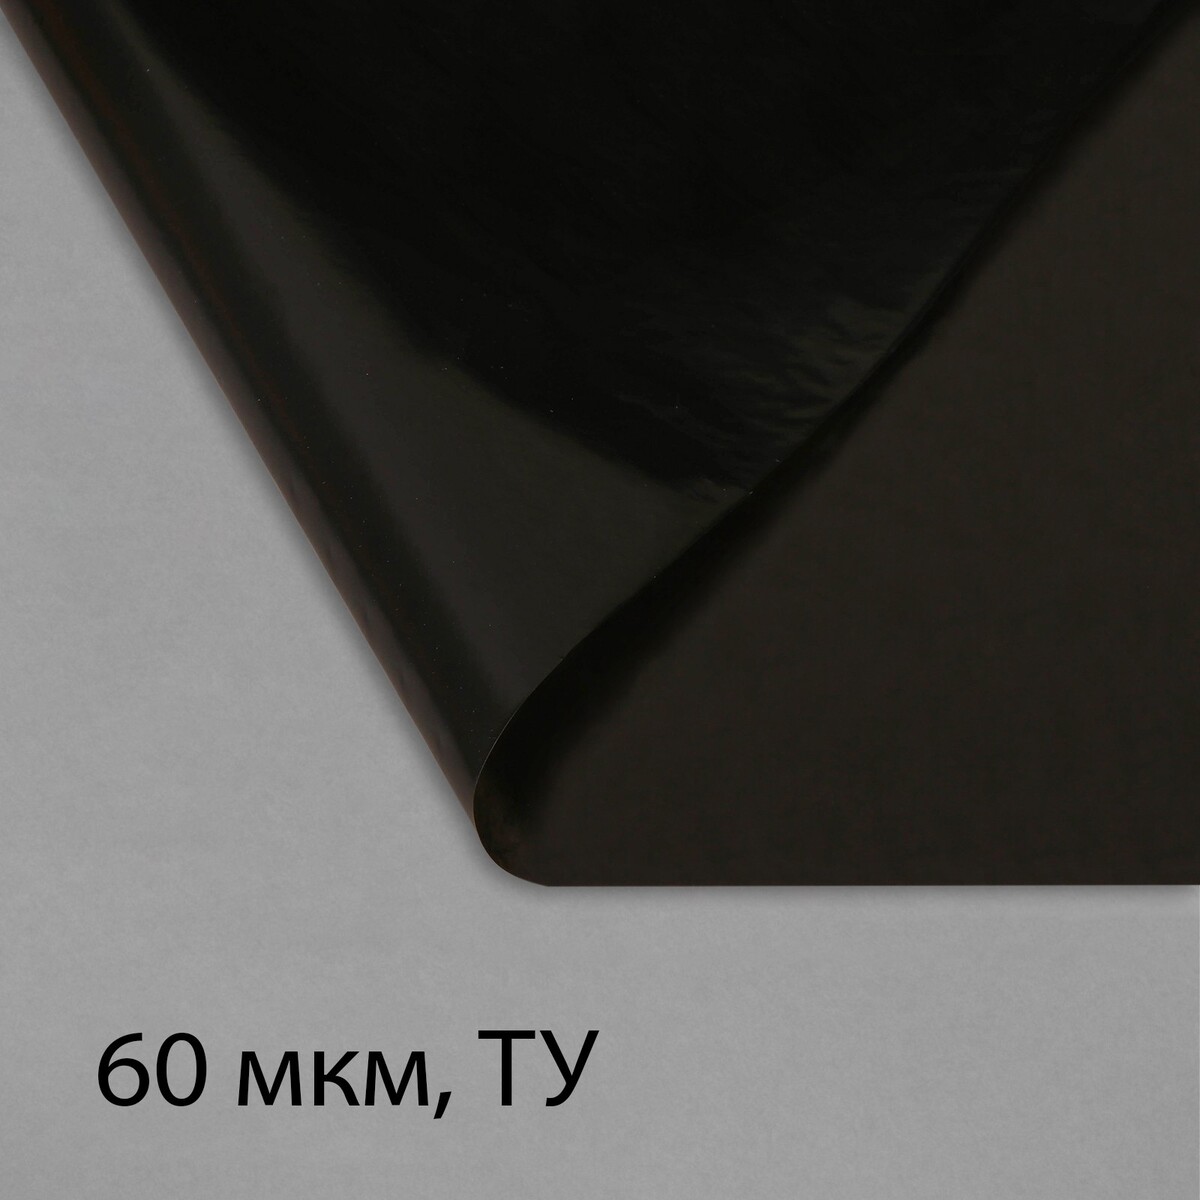 Пленка полиэтиленовая, техническая, 60 мкм, черная, длина 10 м, ширина 3 м, рукав (1.5 м × 2), эконом 50% пленка полиэтиленовая техническая 60 мкм черная длина 10 м ширина 3 м рукав 1 5 м × 2 эконом 50%